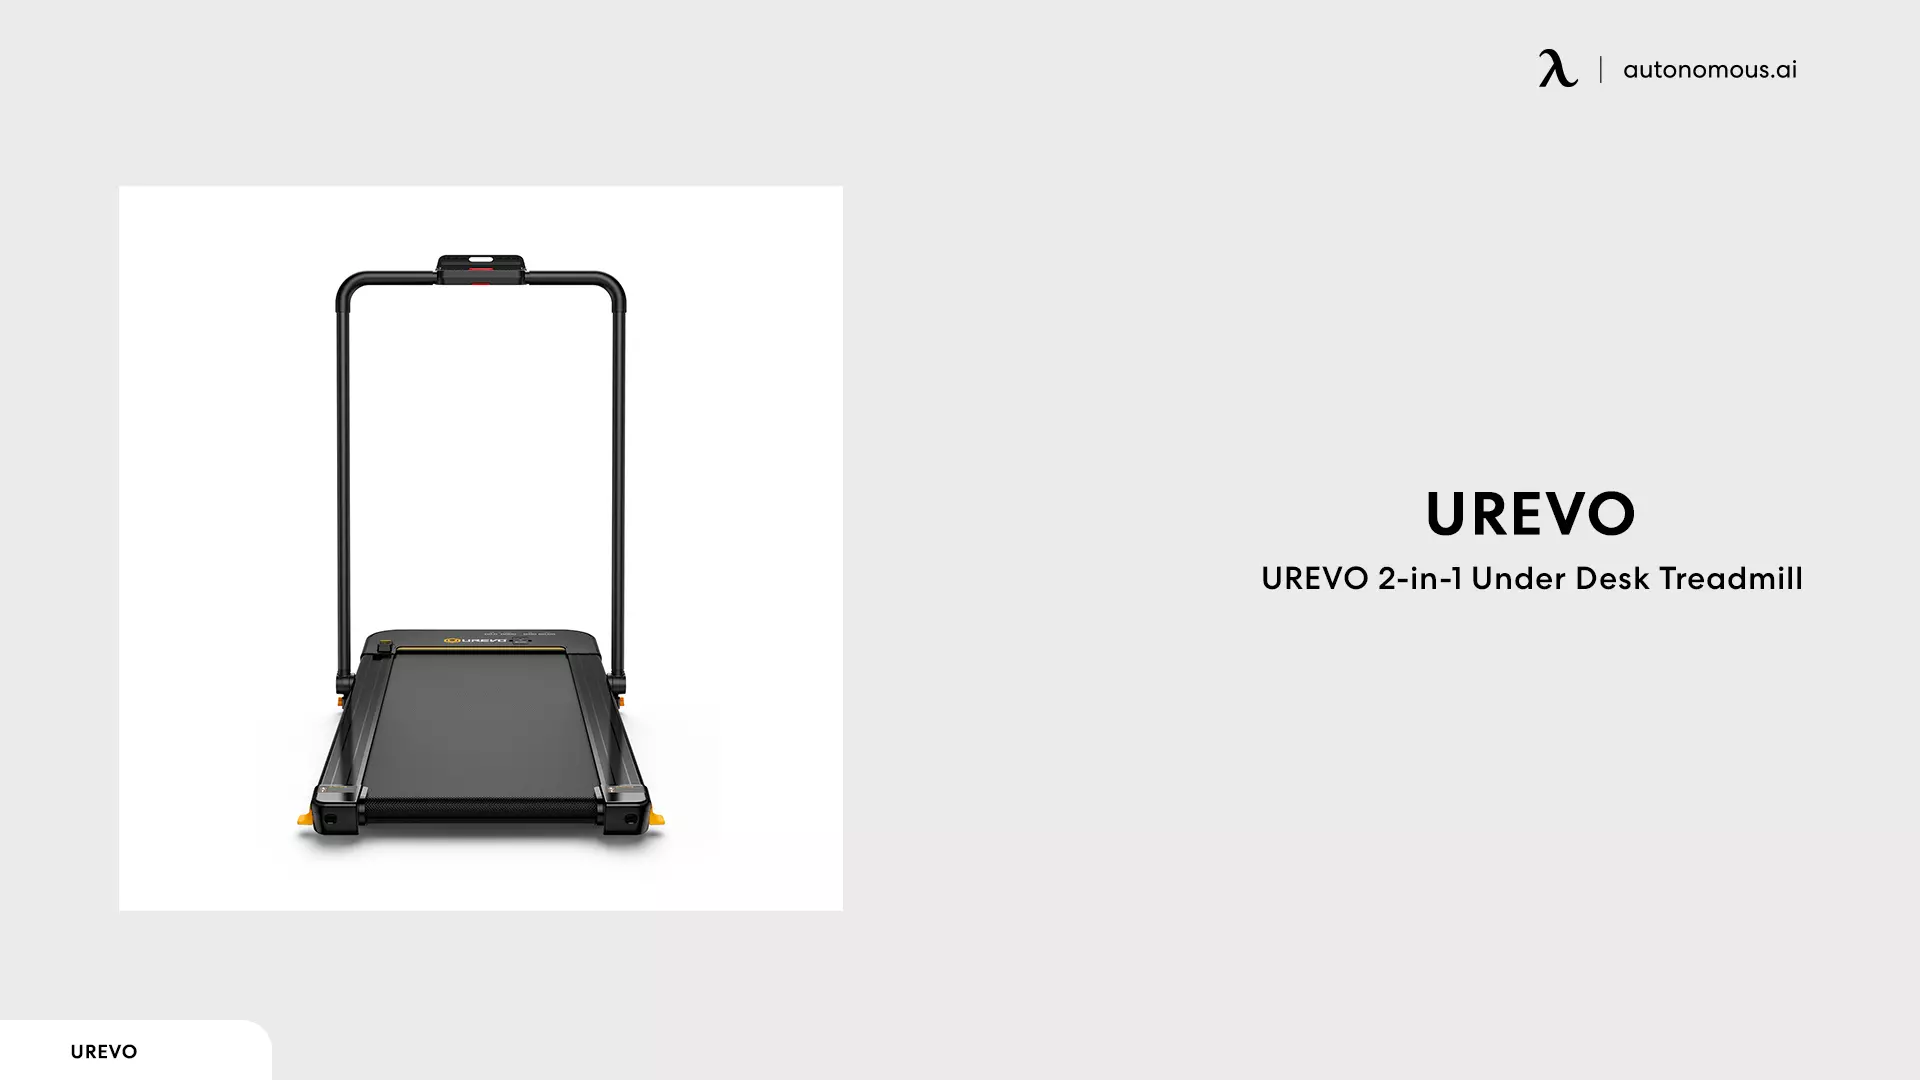 UREVO 2-in-1 Under Desk Treadmill